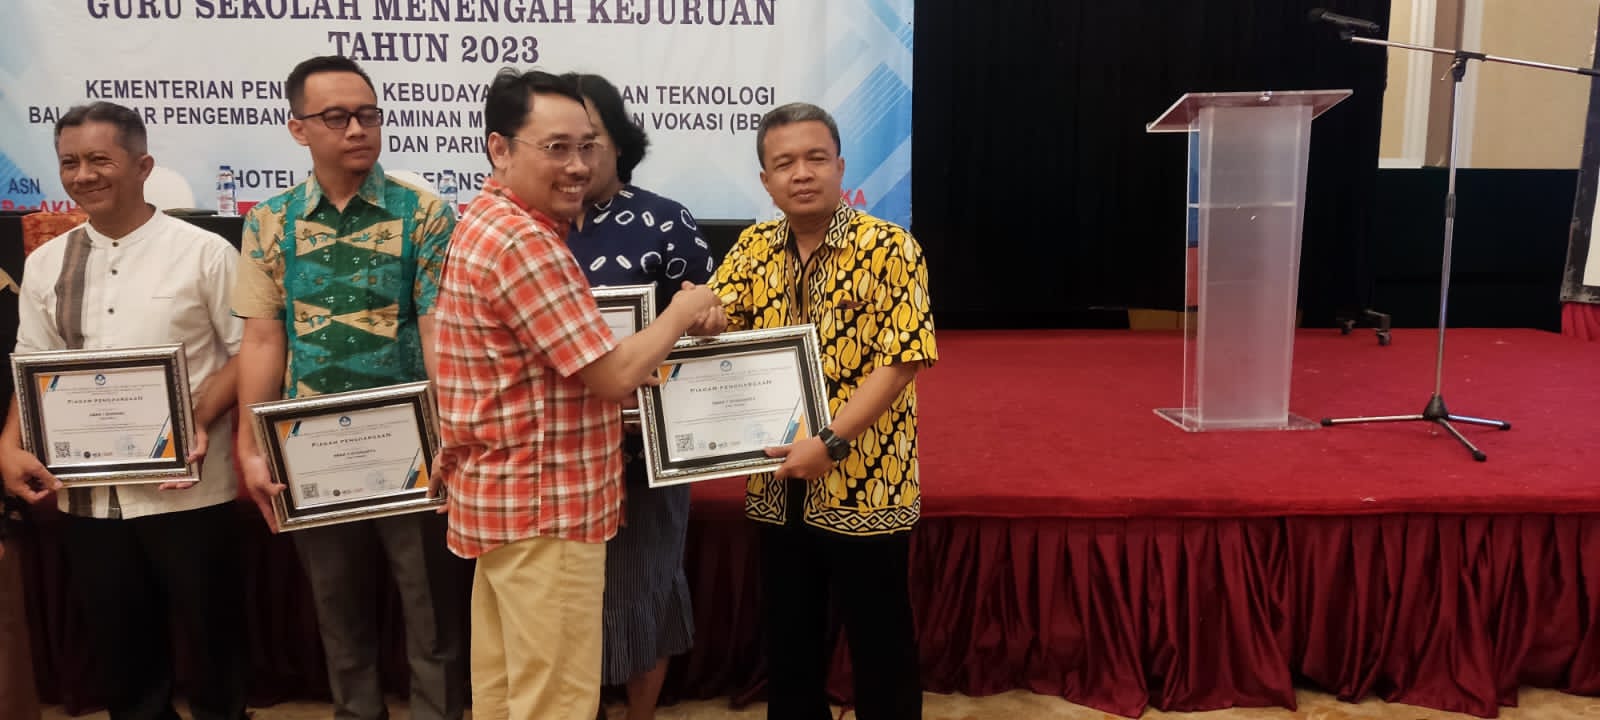 Penghargaan bagi SMKN 7 Surakarta menjadi PB (Pusat Belajar)